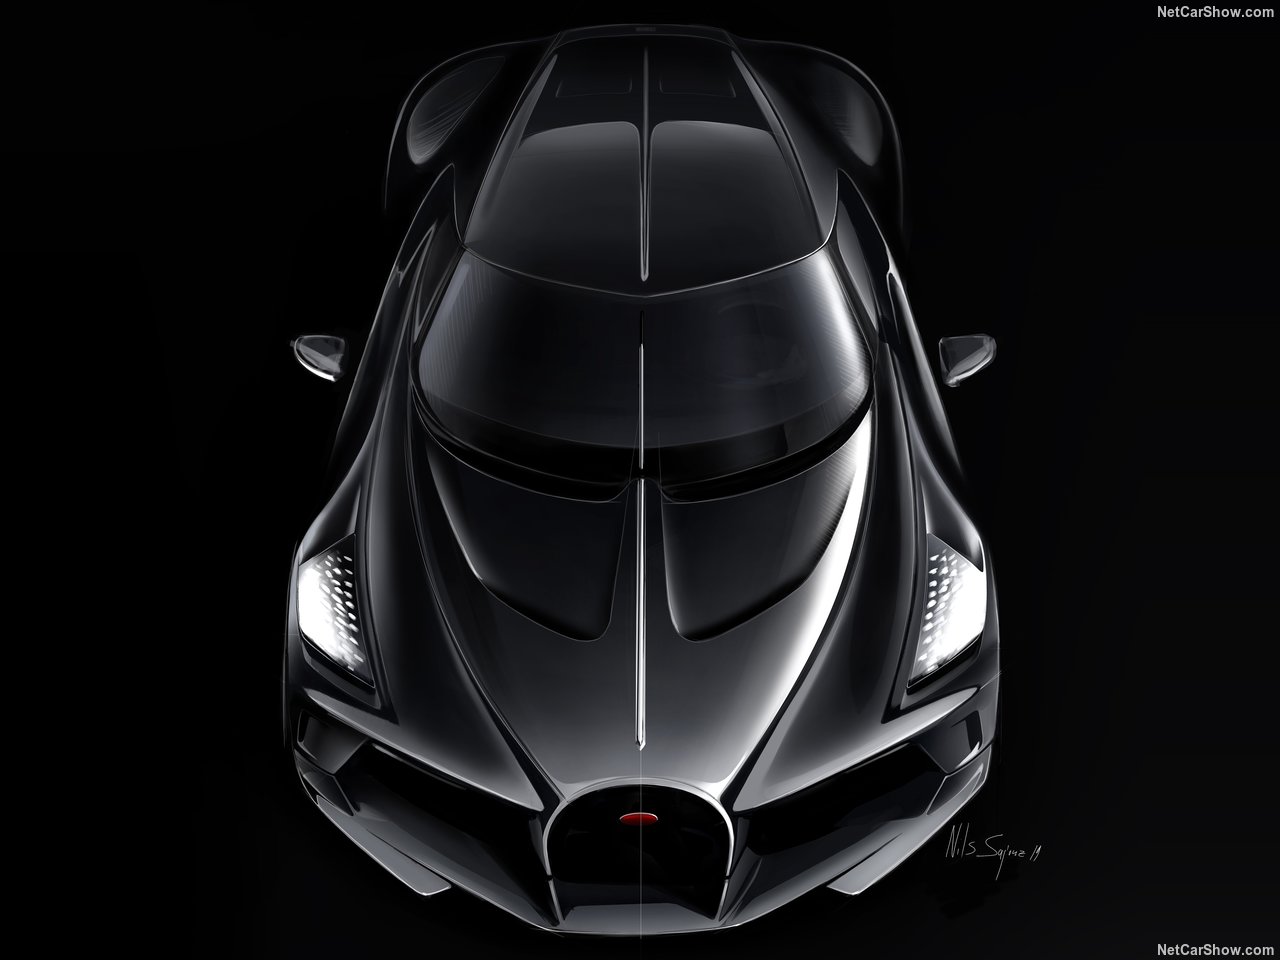 Dünyanın en pahalı otomobili: Bugatti La Voiture Noire